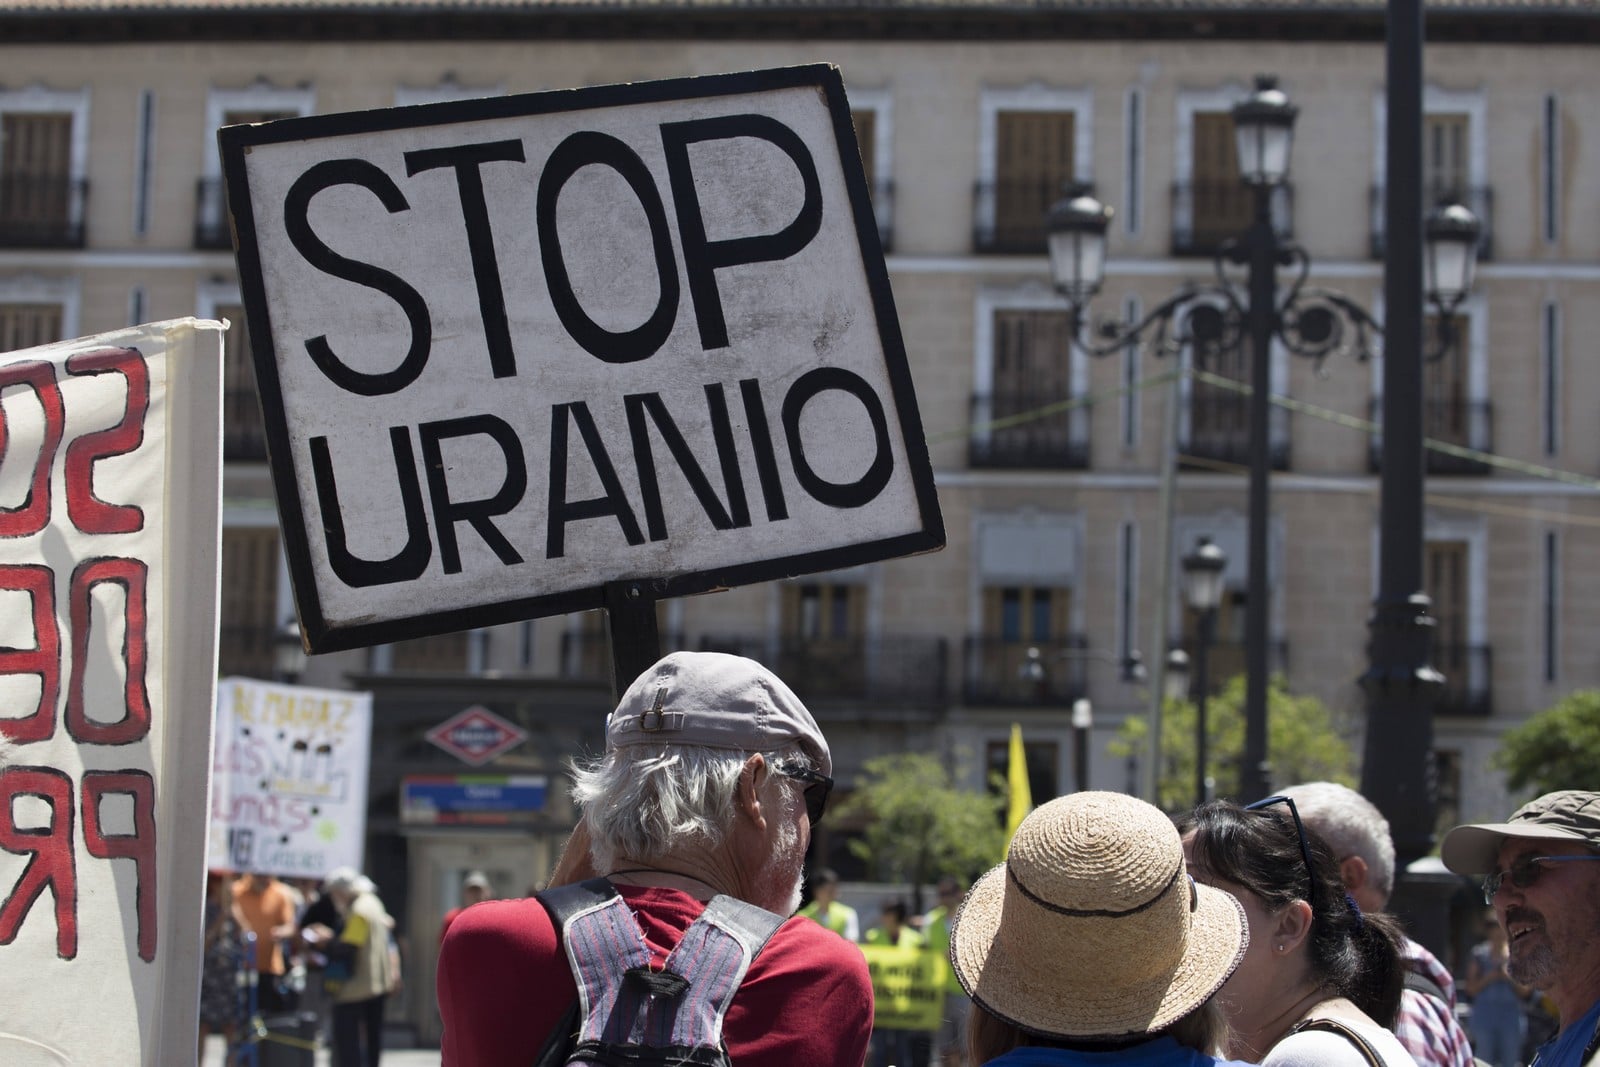 Écologistes espagnols manifestant à Madrid en juin 2019 pour la fermeture de centrales nucléaires et de mines d'uranium,
Auteurs  : Lito Lizana / SOPA Images/Sipa U/SIPA,
Numéro de reportage  : SIPAUSA30170312_000005.